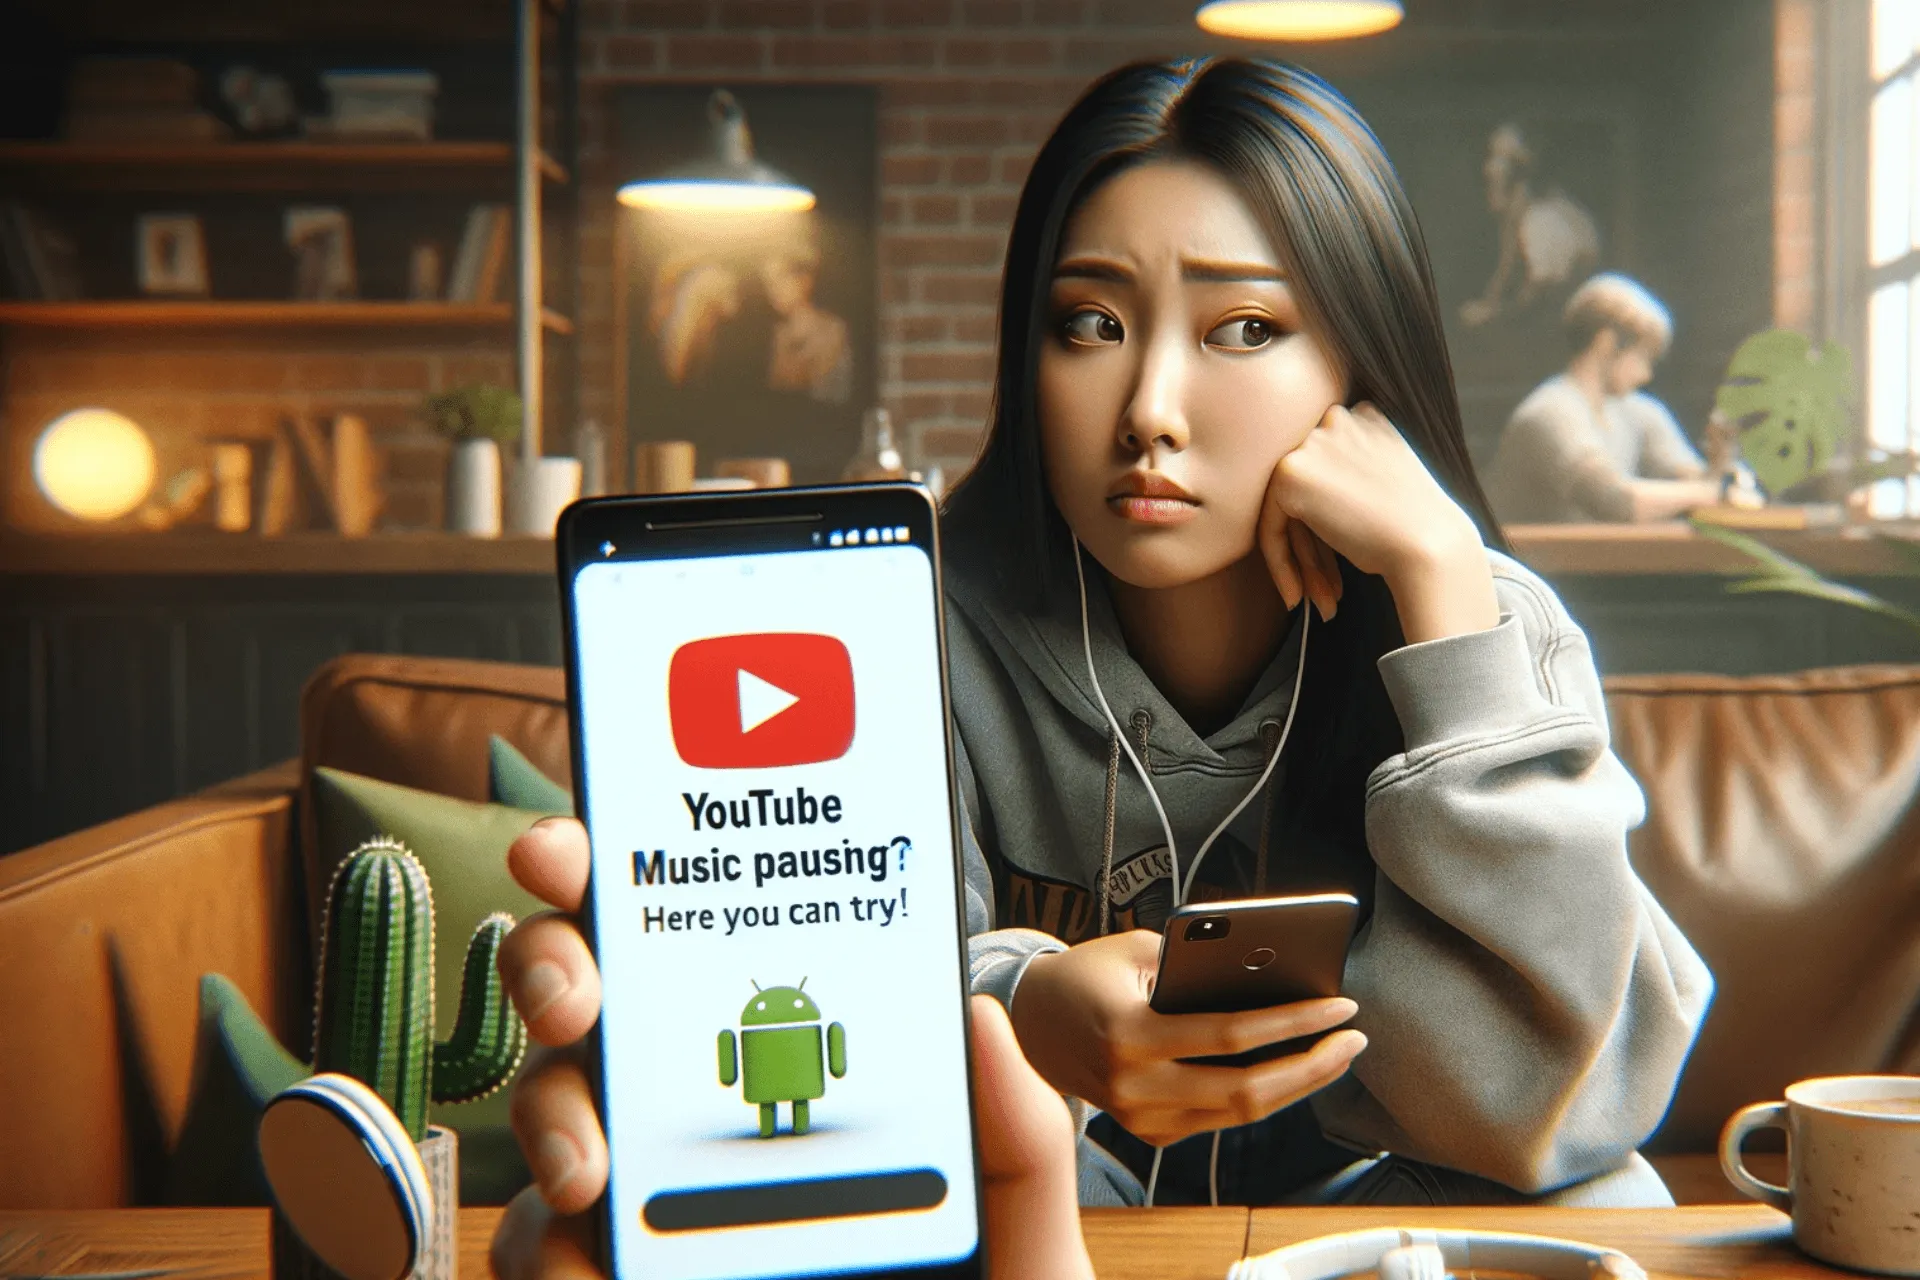 YouTube Music continua a essere in pausa? Ecco le soluzioni che puoi provare!